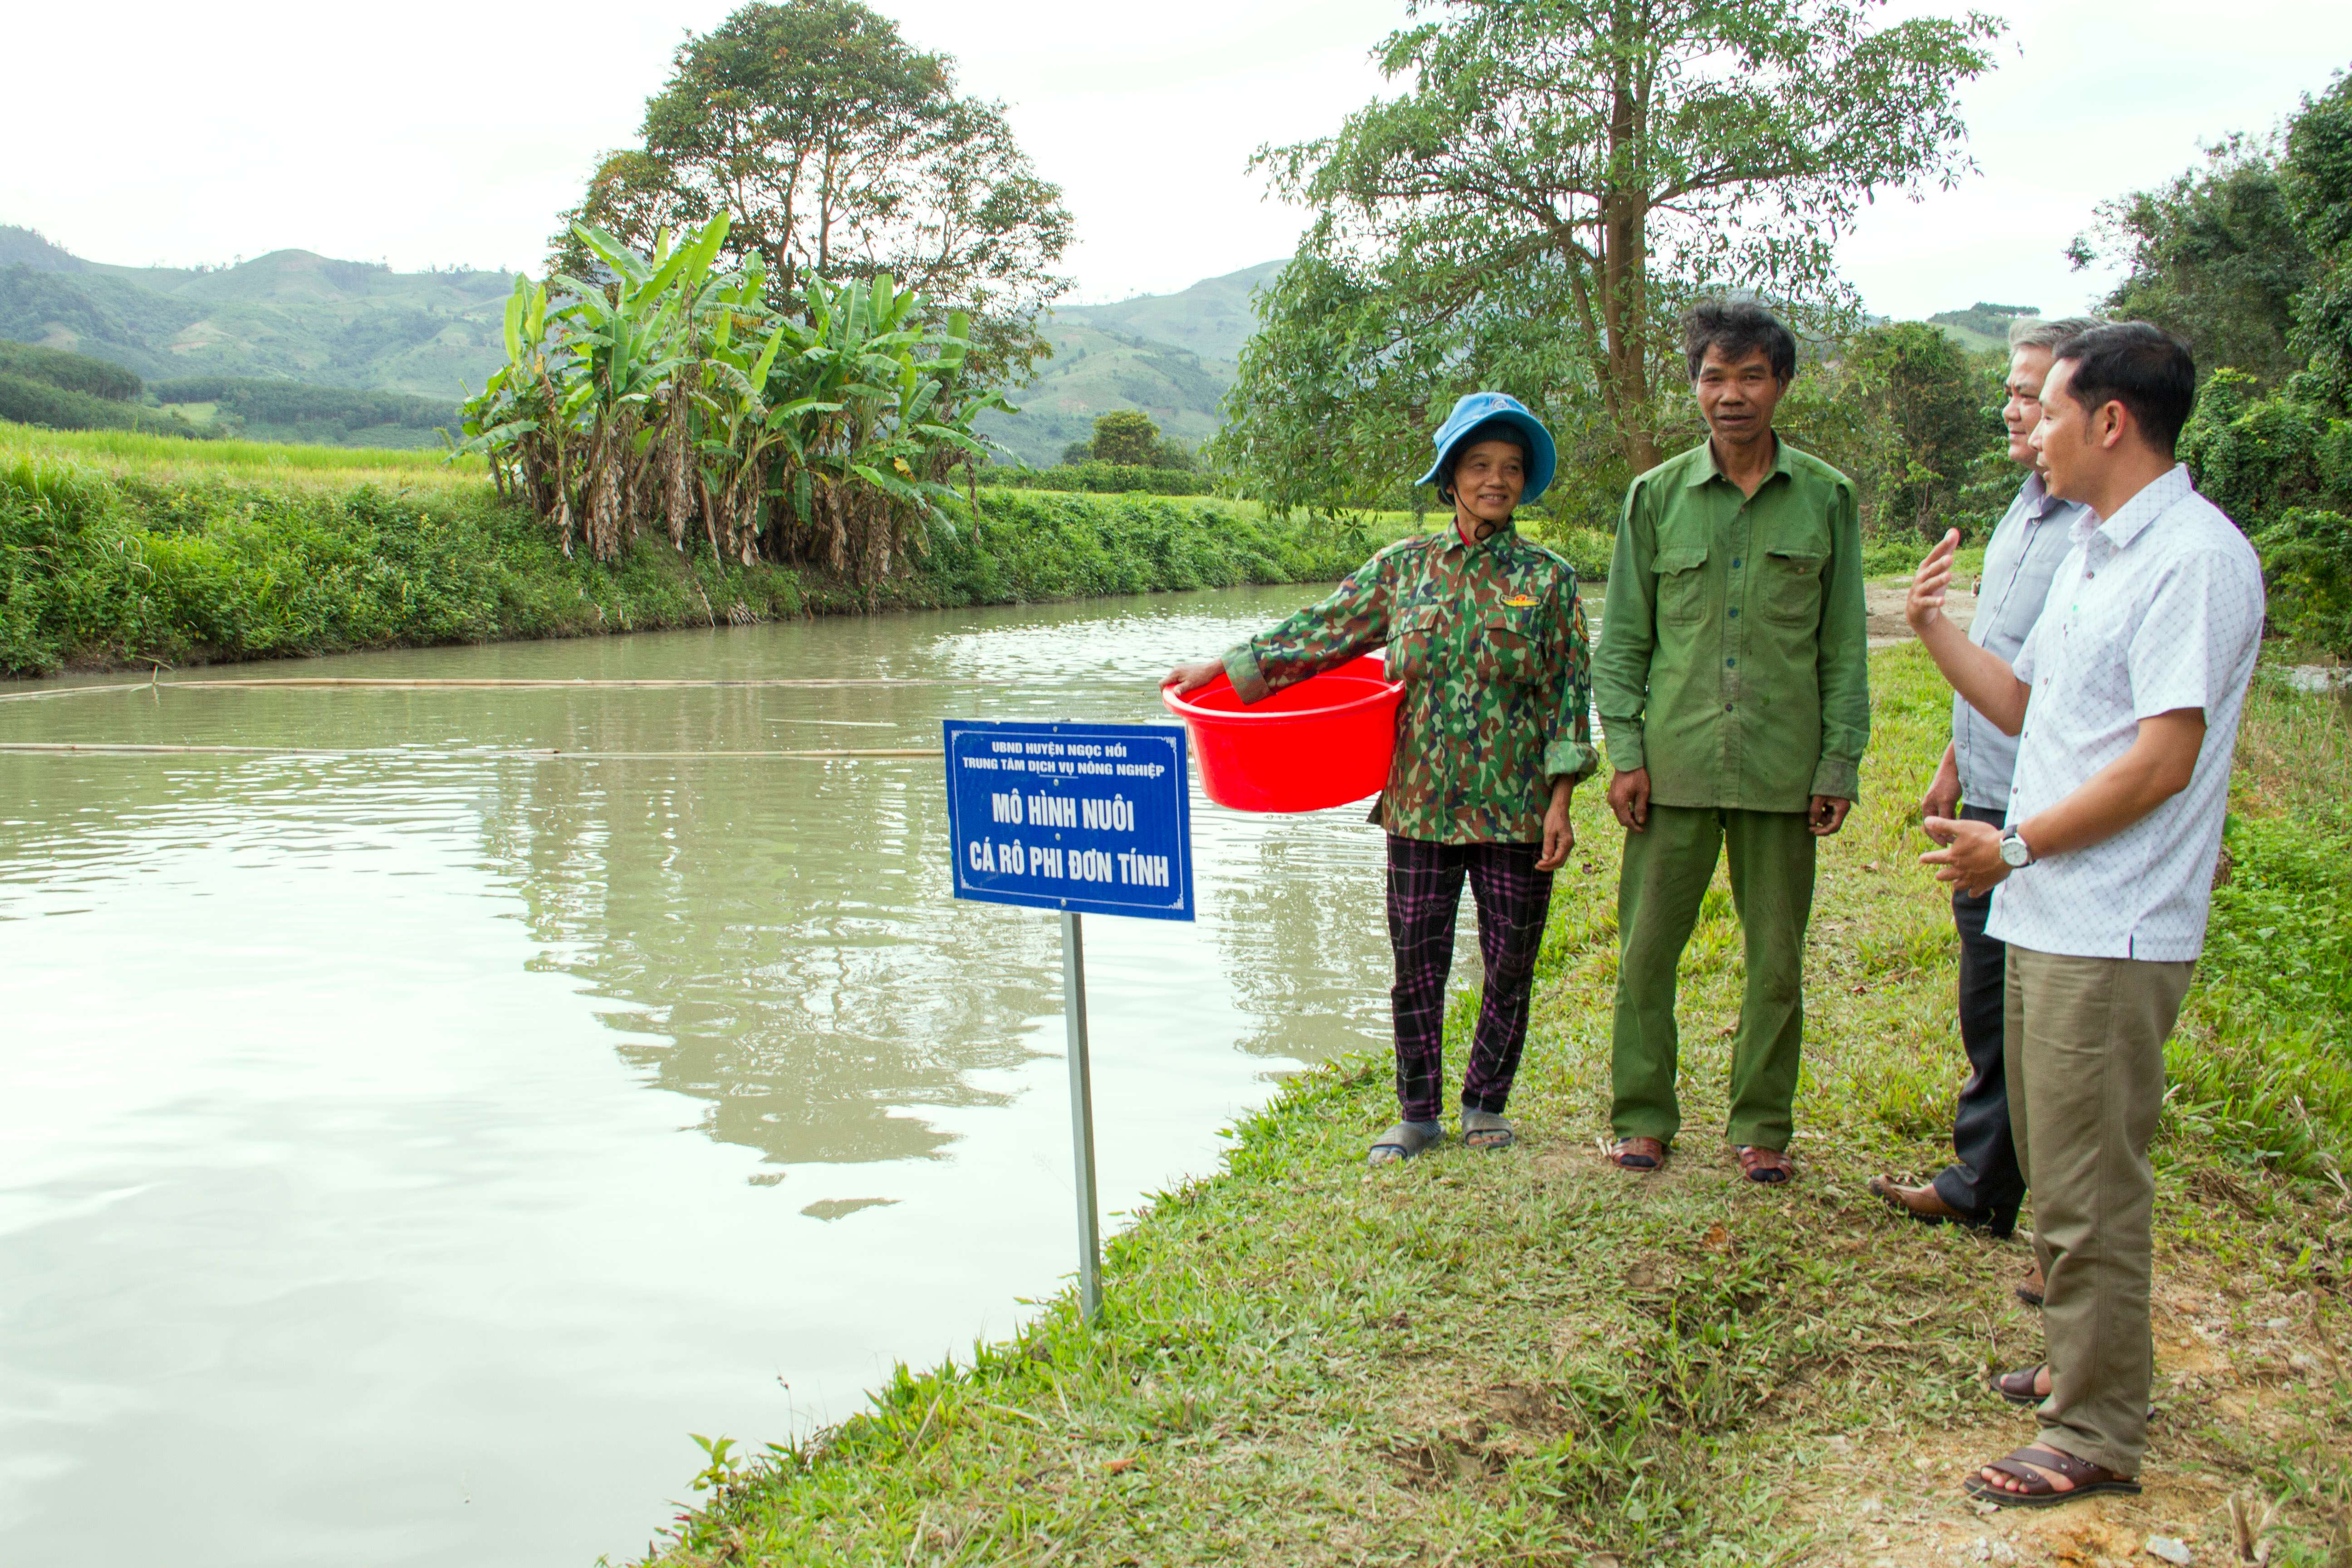 Tiền Giang nhân rộng mô hình nuôi thủy sản thích ứng biến đổi khí hậu   Kinh doanh  Vietnam VietnamPlus